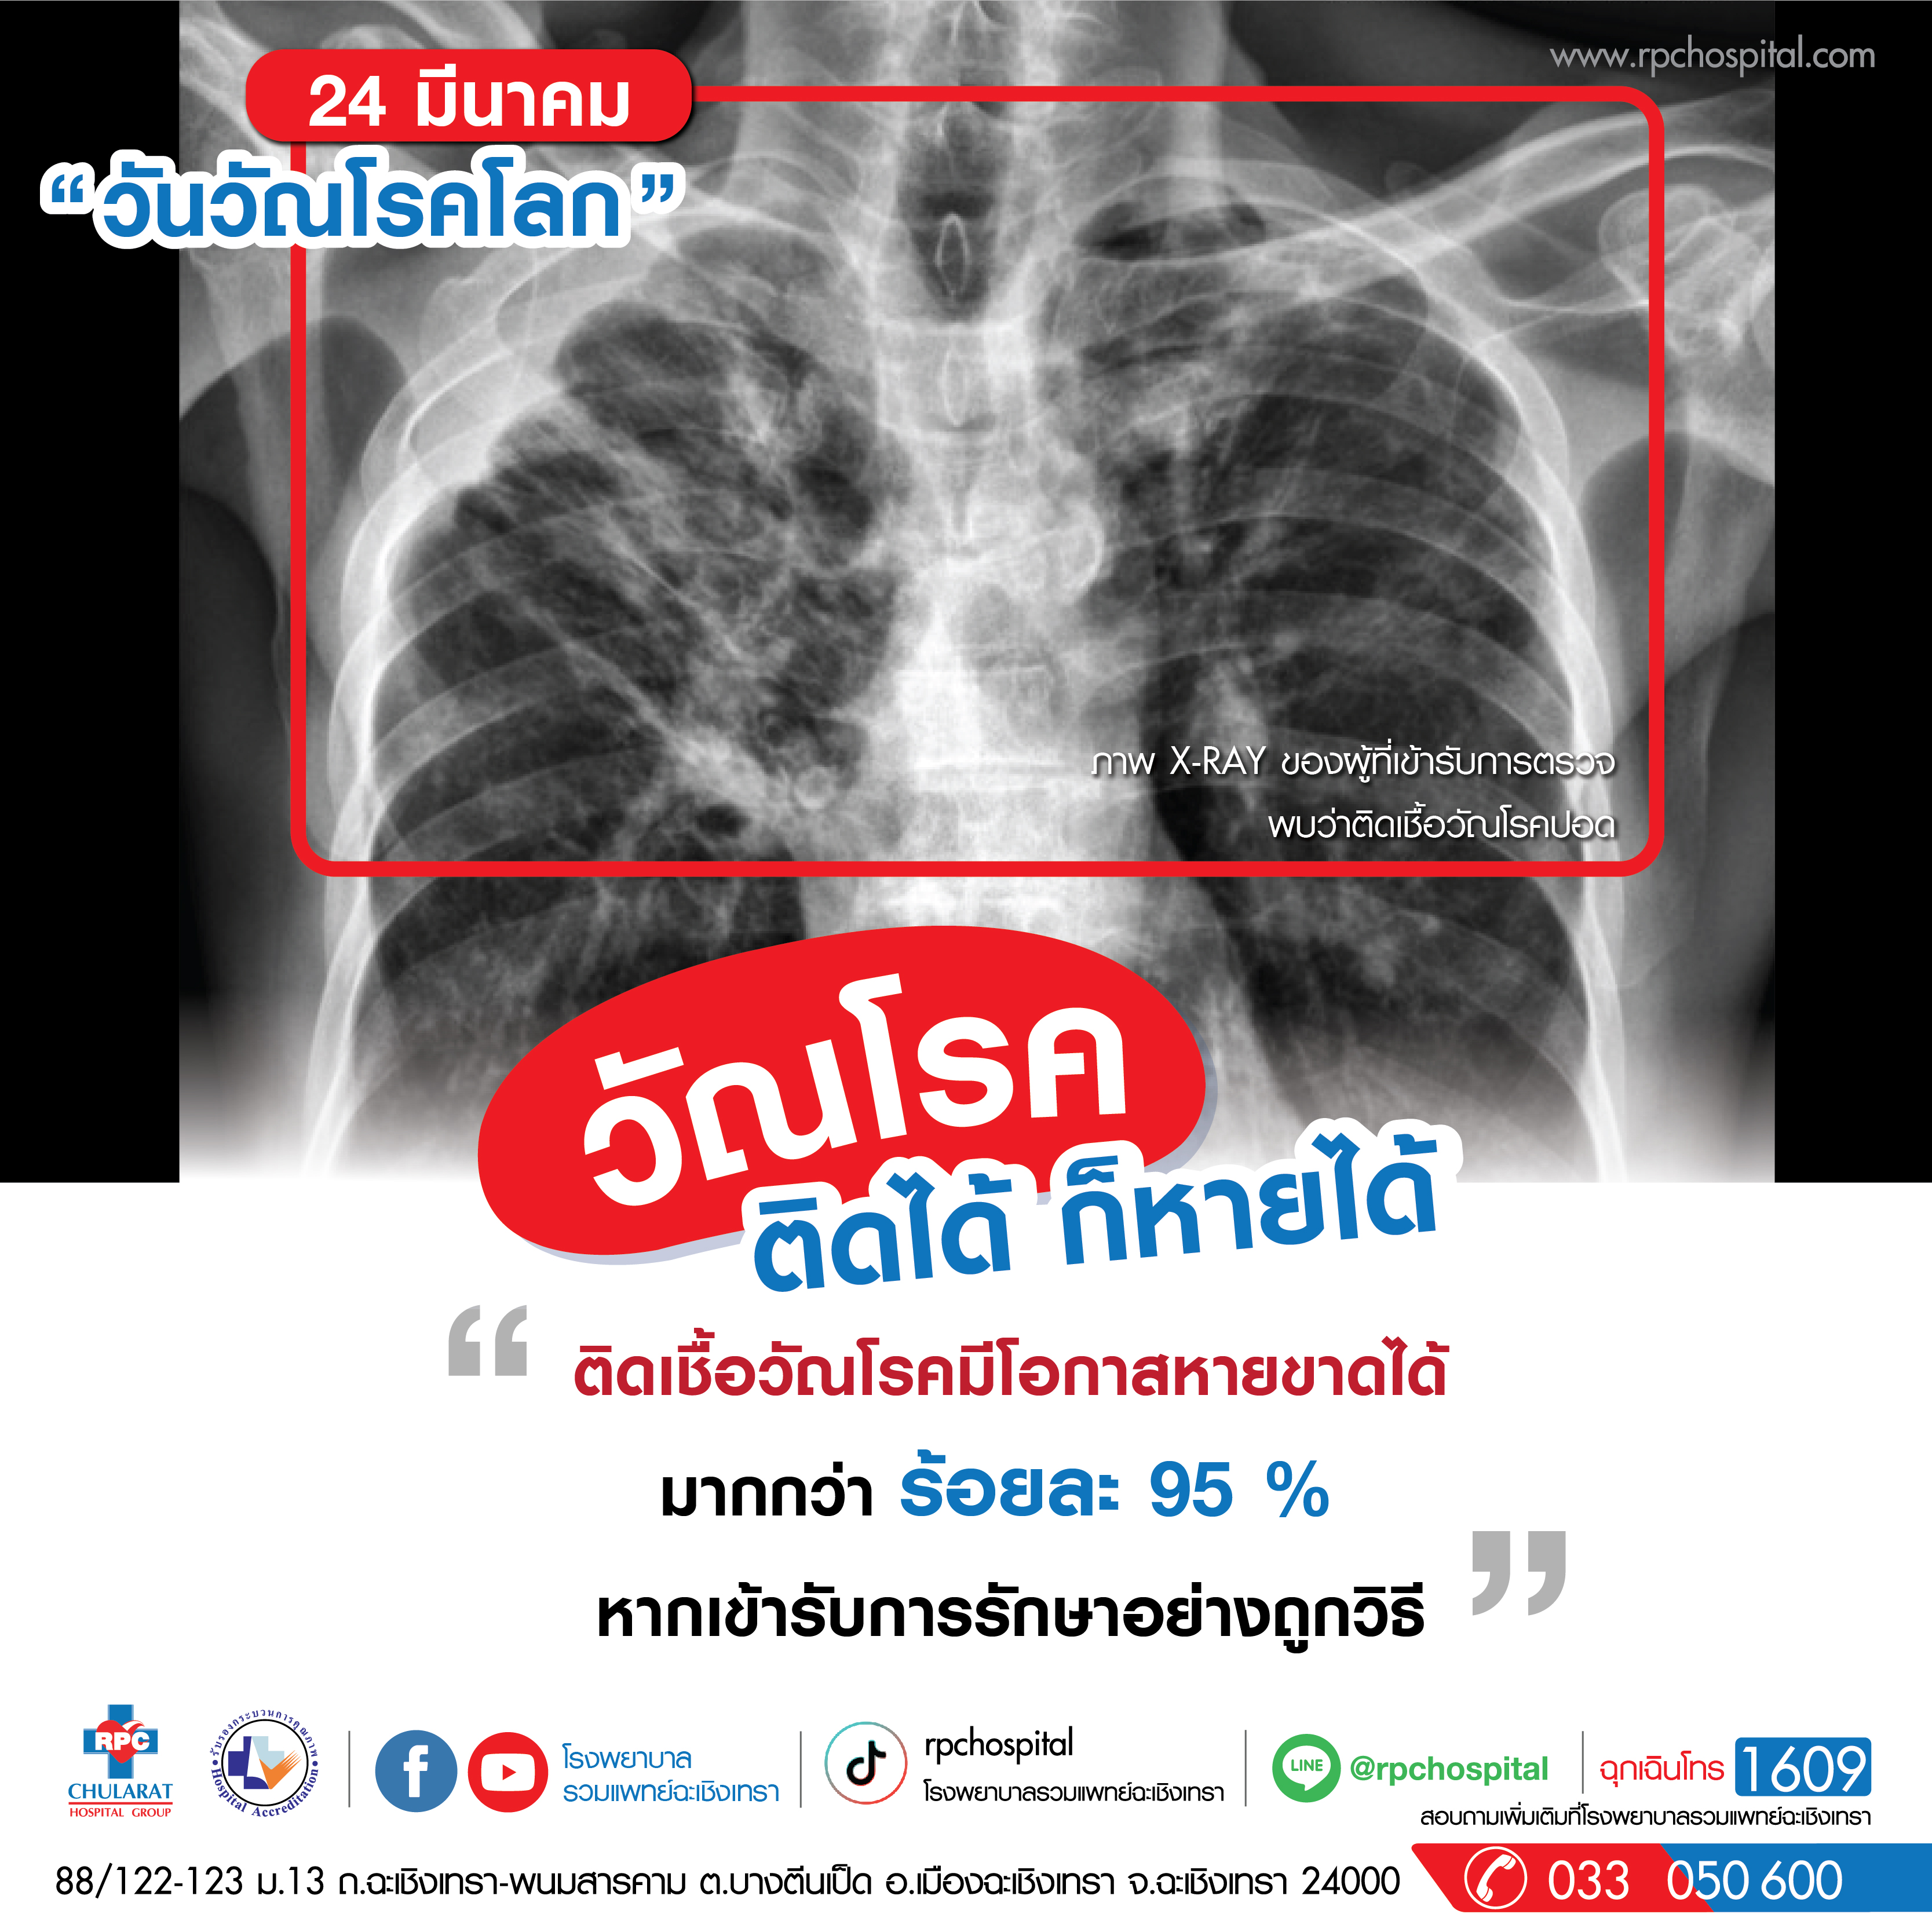 วัณโรค (Tuberculosis:TB) - ความรู้สุขภาพ - โรงพยาบาลรวมแพทย์ฉะเชิงเทรา